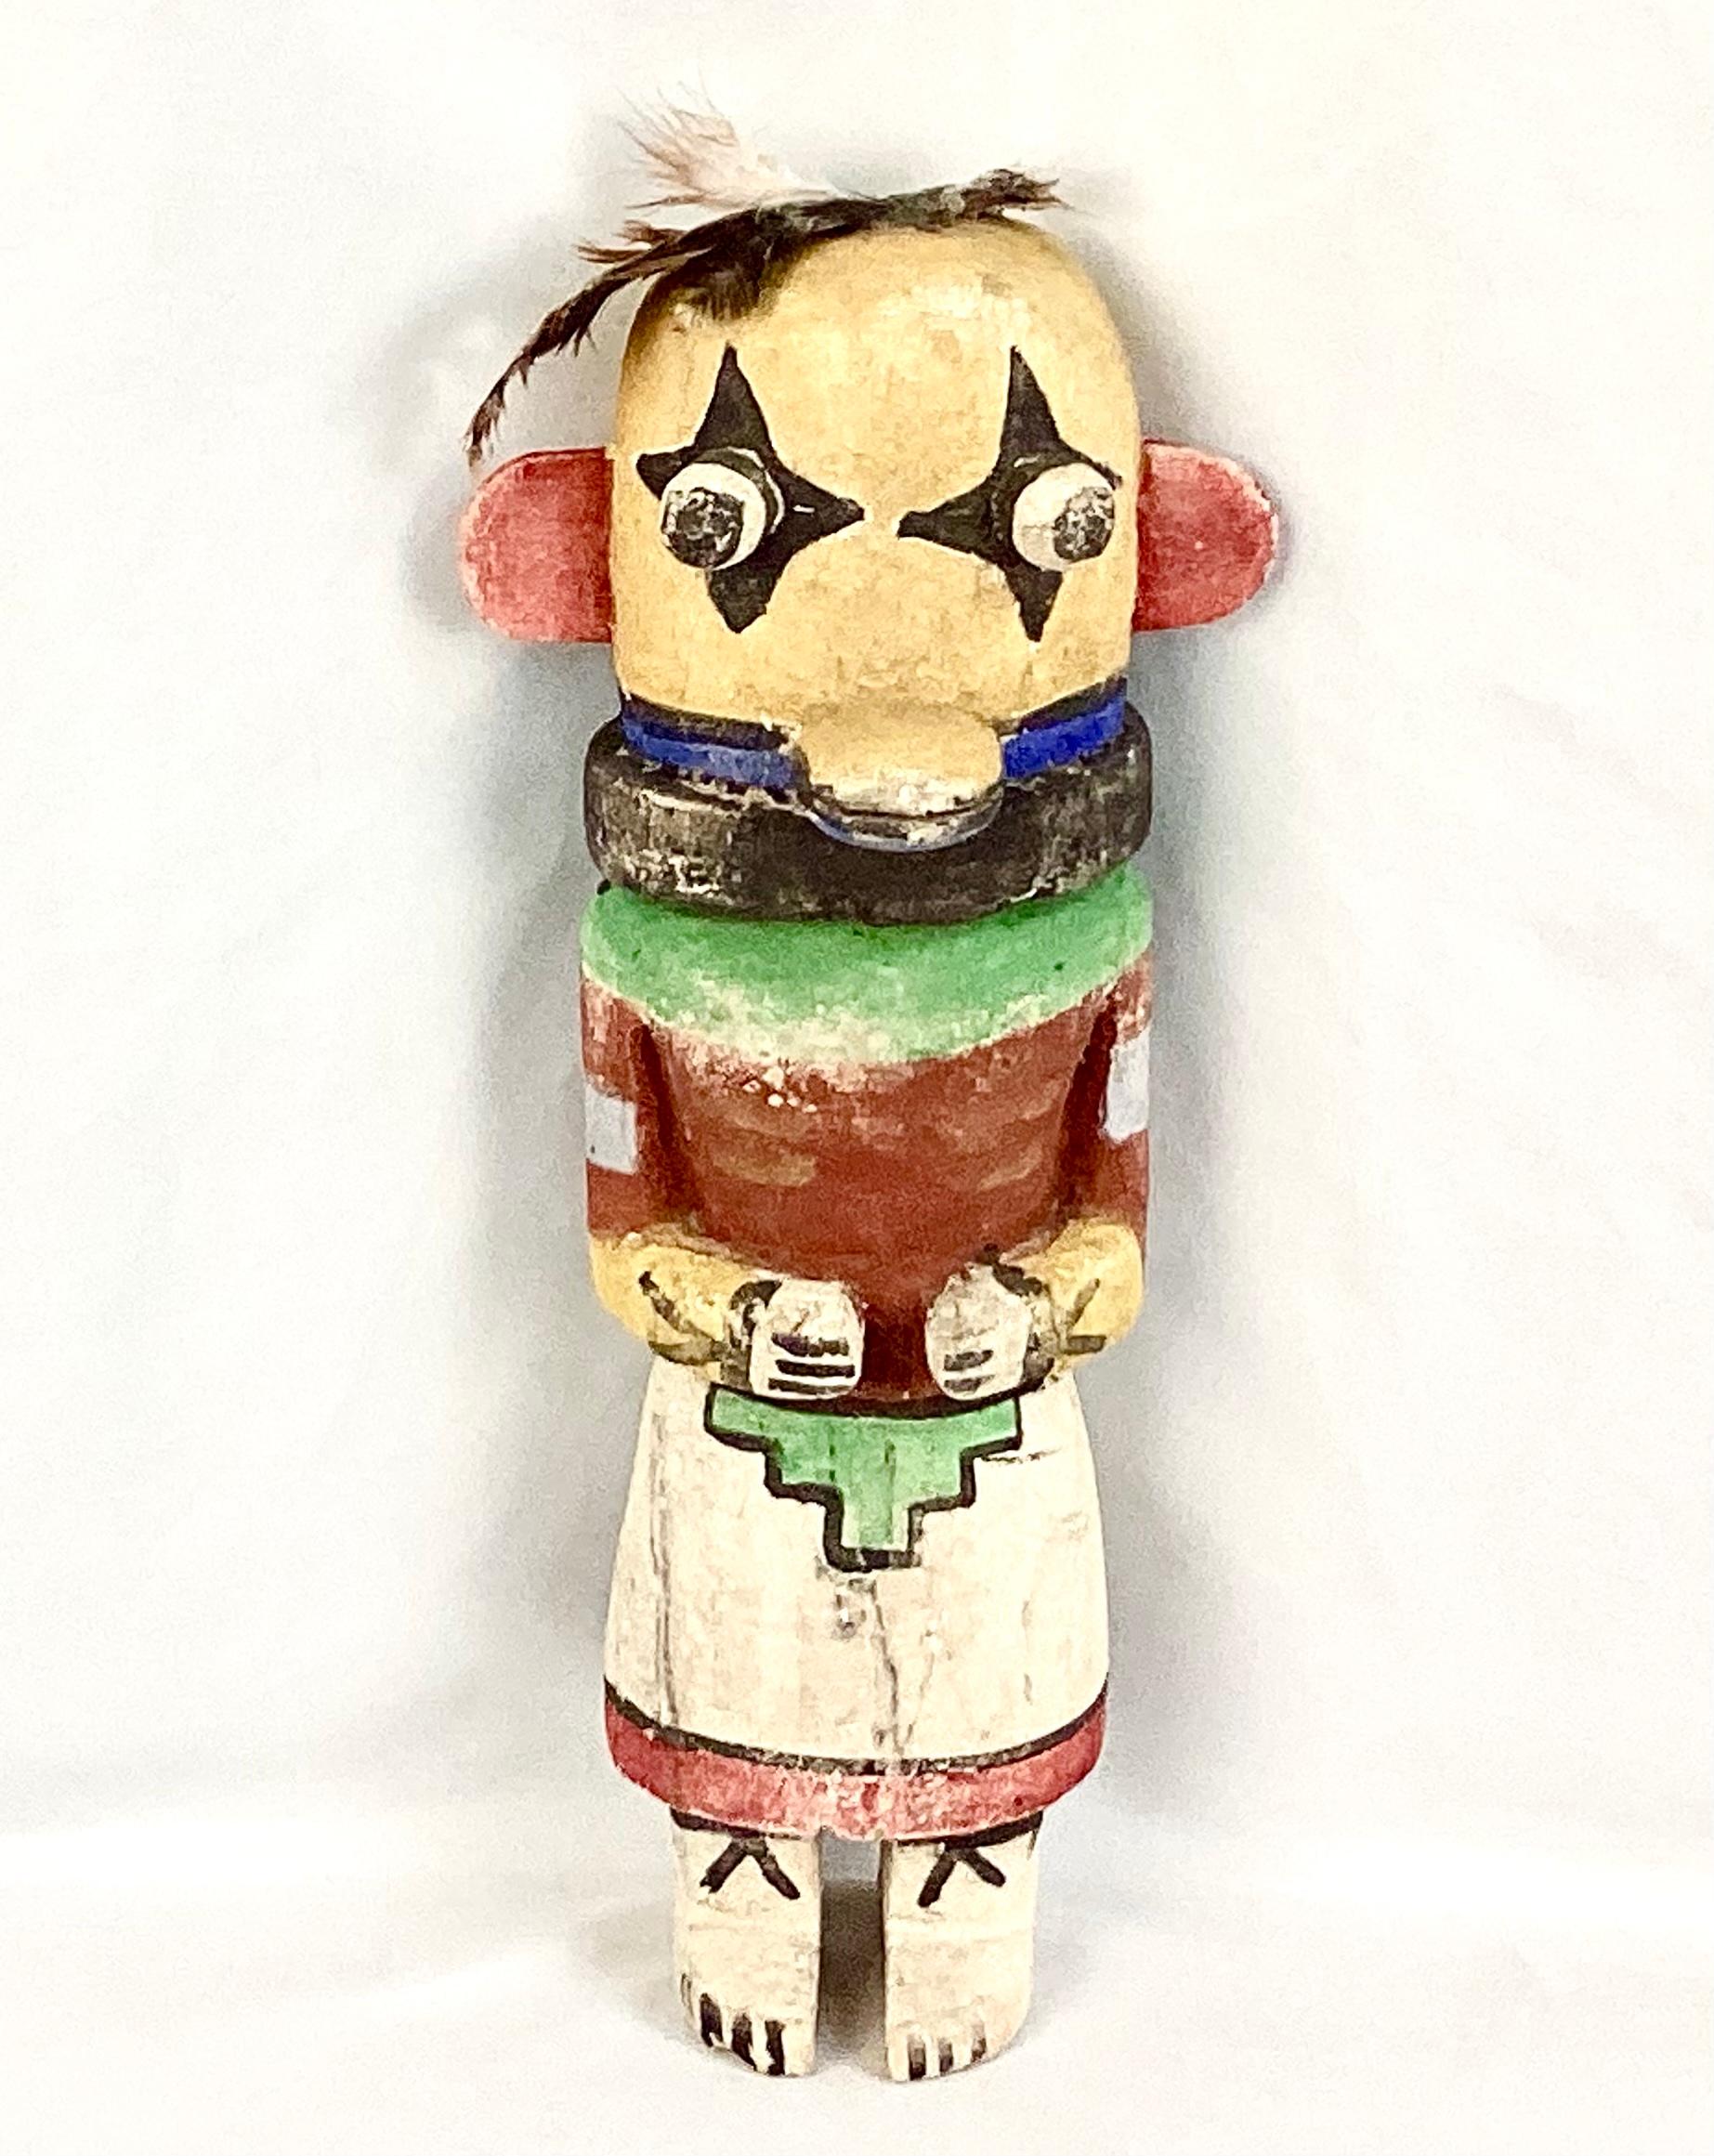 Hopi-Katsina-Figuren (Hopi-Sprache: tithu oder katsintithu), auch als Kachina-Puppen bekannt, sind Figuren, die von den Hopi-Völkern typischerweise aus Pappelwurzeln geschnitzt wurden, um junge Mädchen und neue Bräute über Katsinas oder Katsinam zu